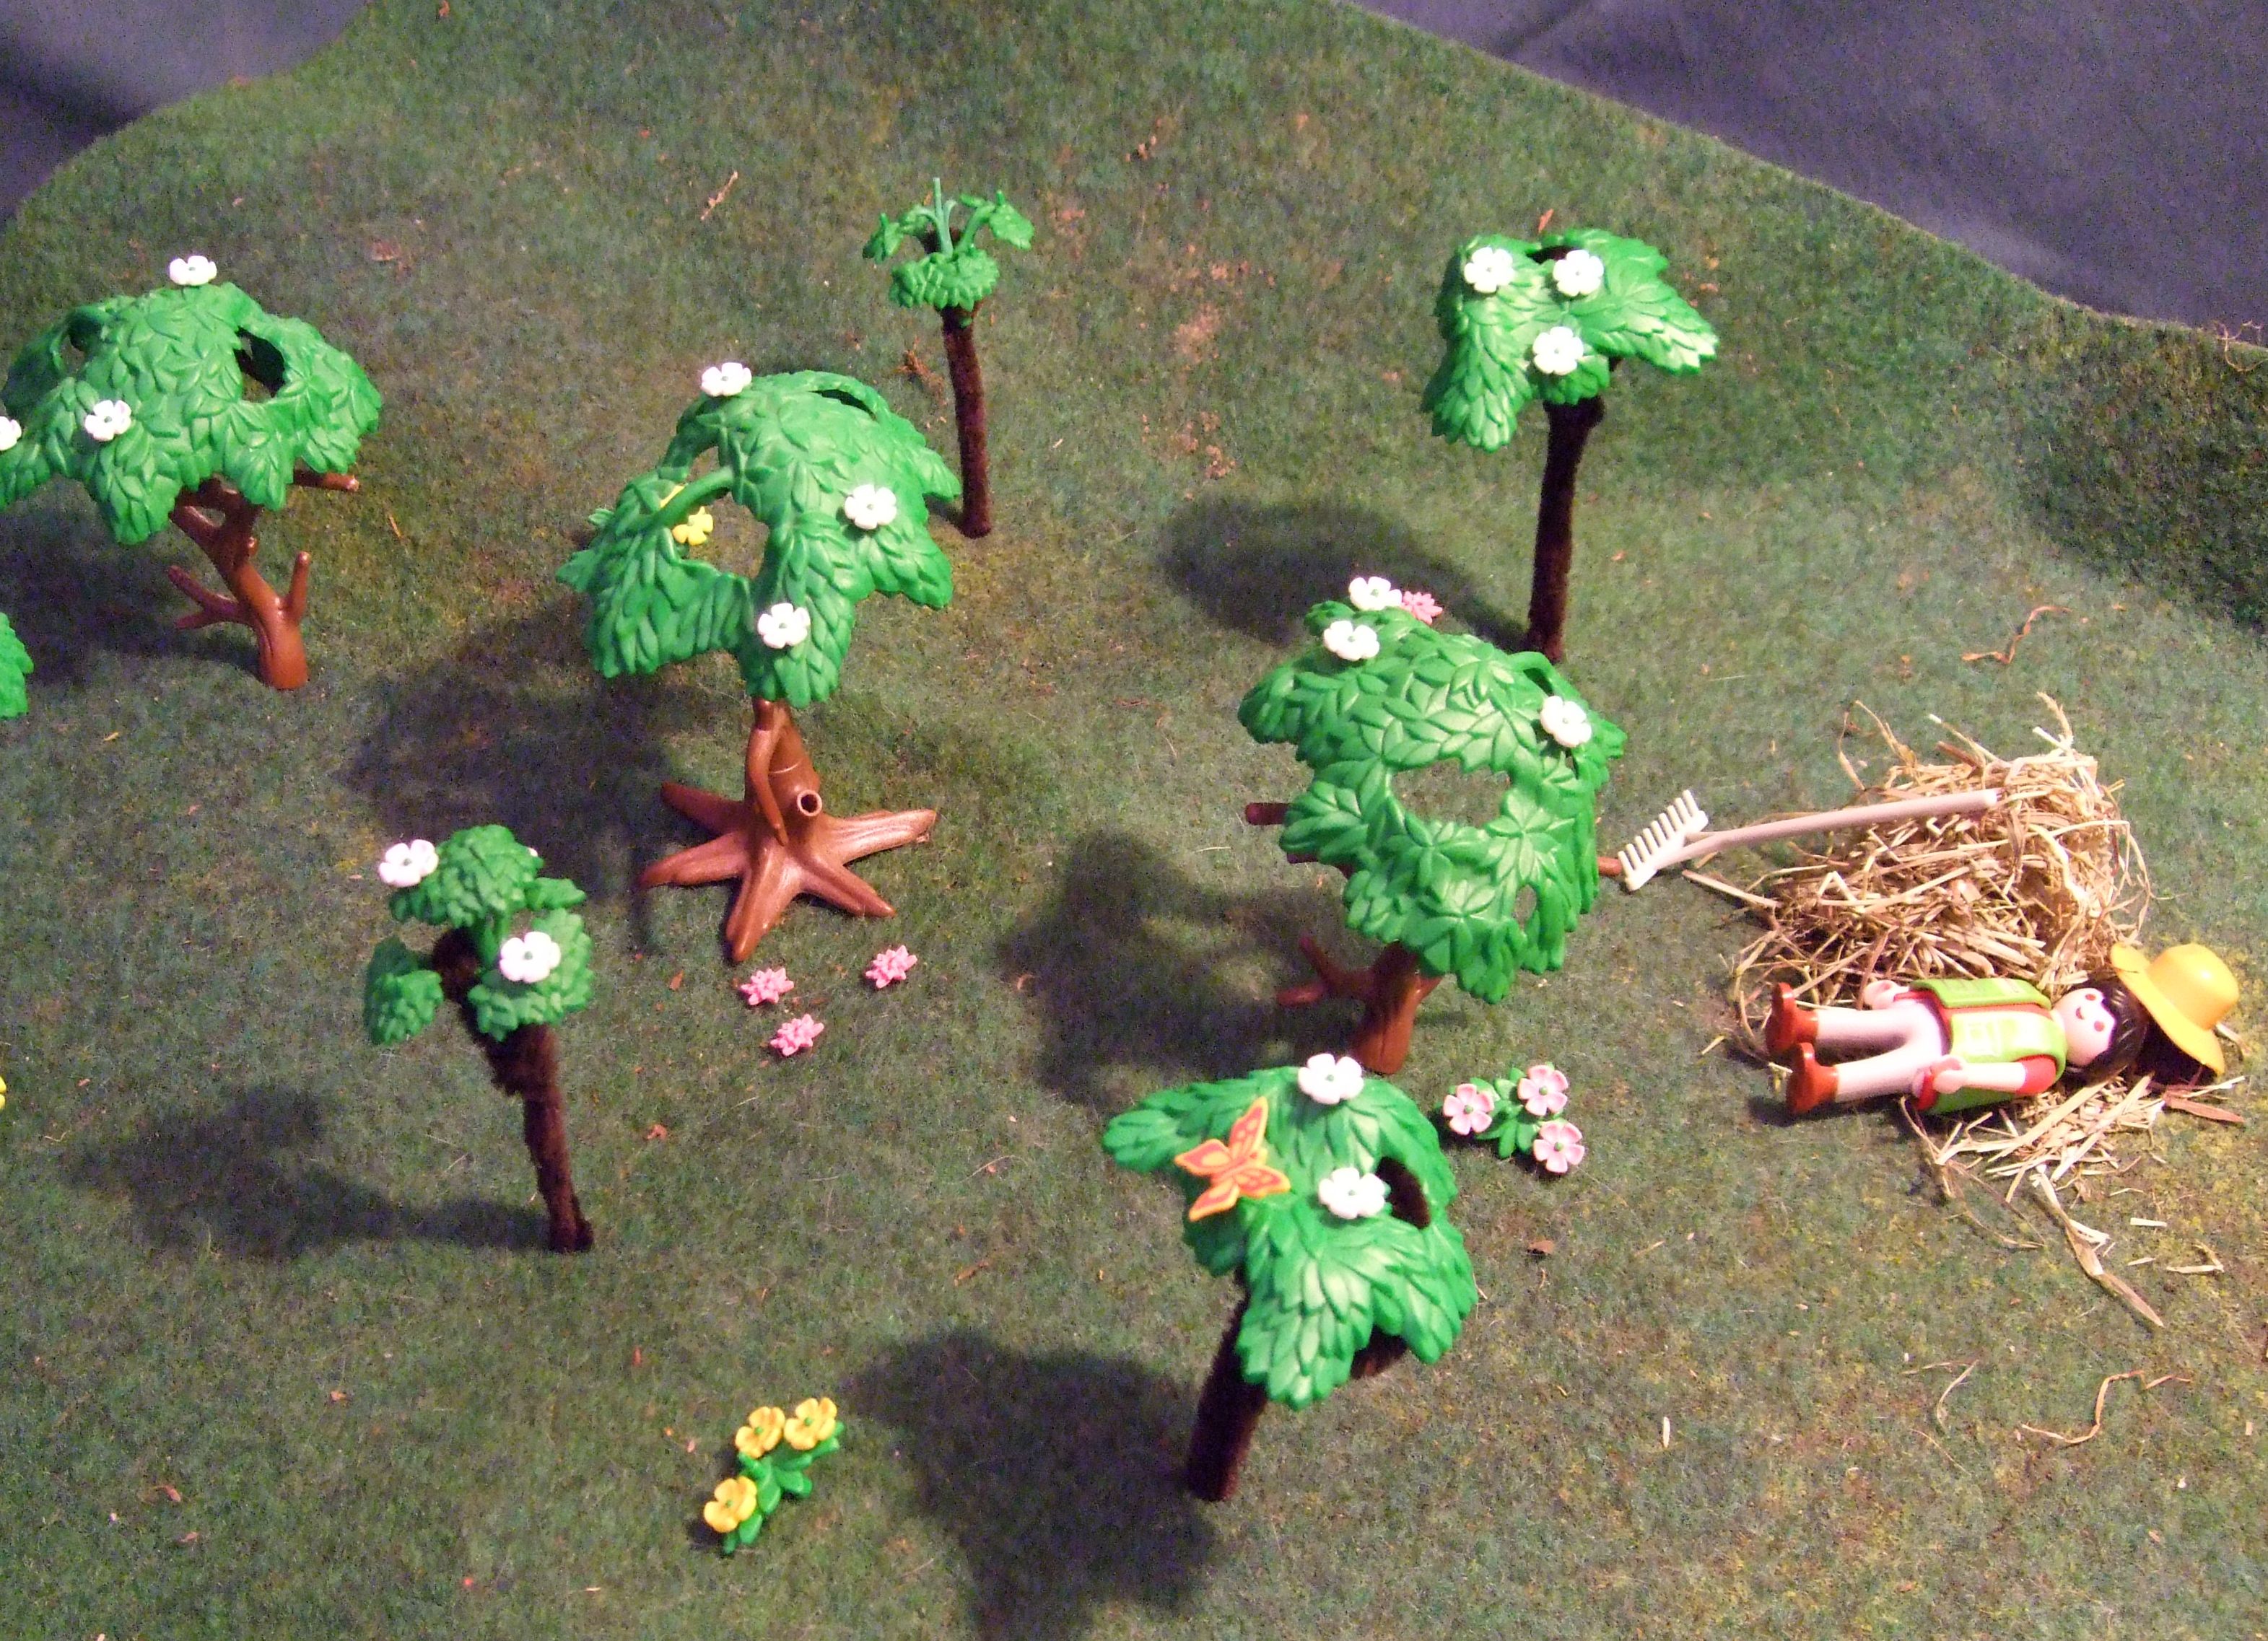 Aus Playmobilfiguren wurde eine Obstwiese dargestellt. Es sind 7 Bäume und ein liegender Gärtner auf einer Wiese zu sehen